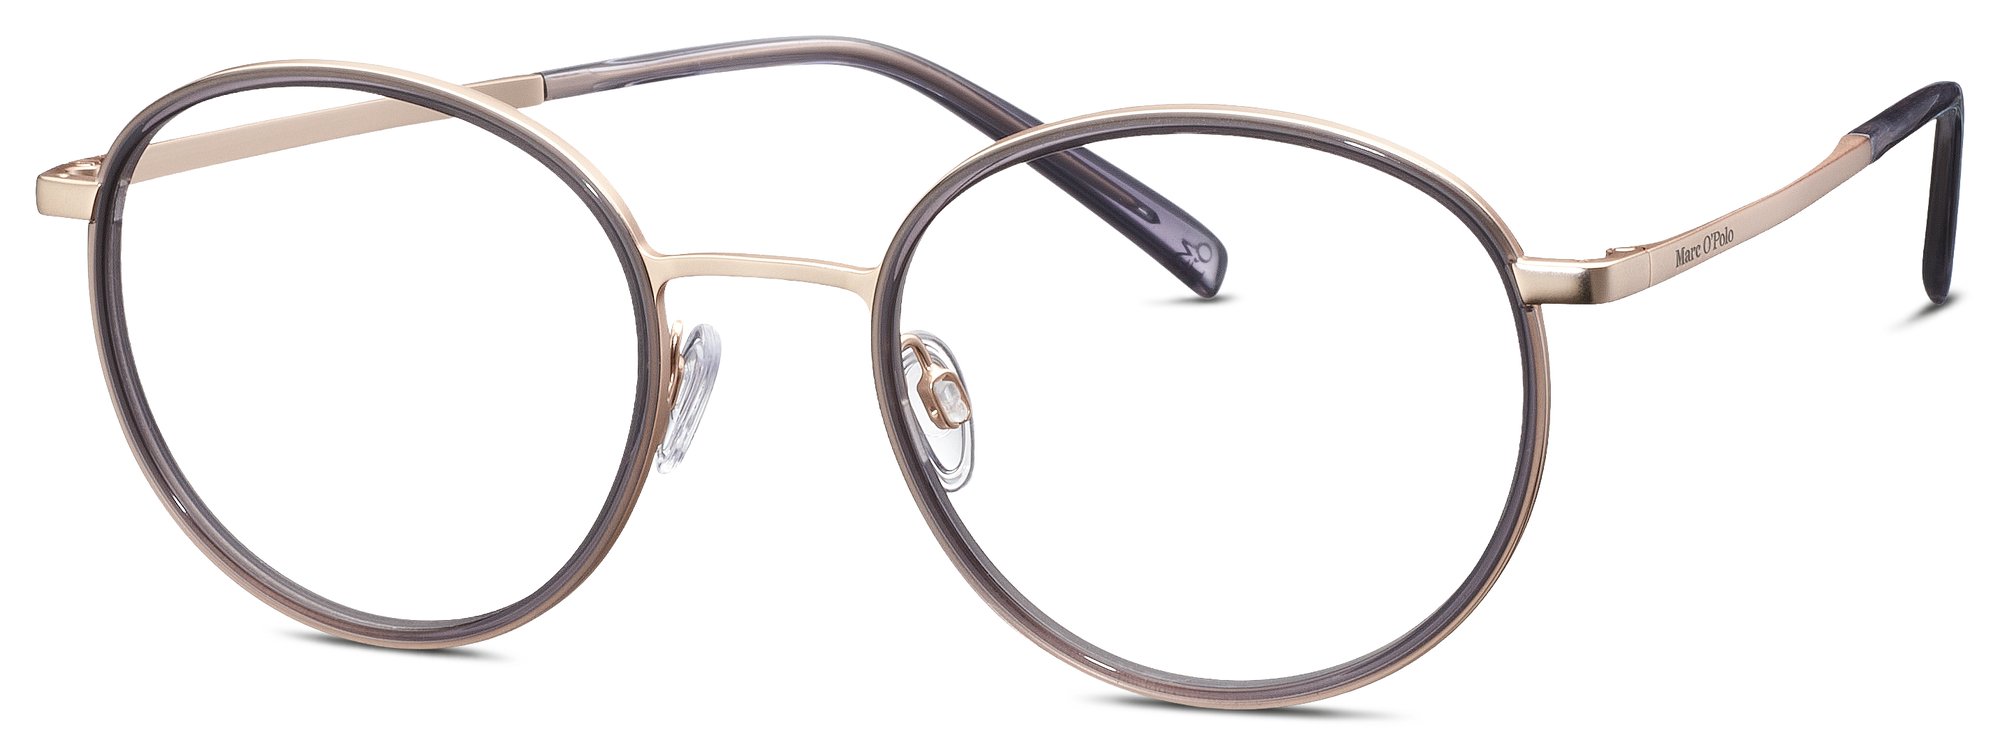 Das Bild zeigt die Korrektionsbrille 502188 32 von der Marke Marc O‘Polo in grau.